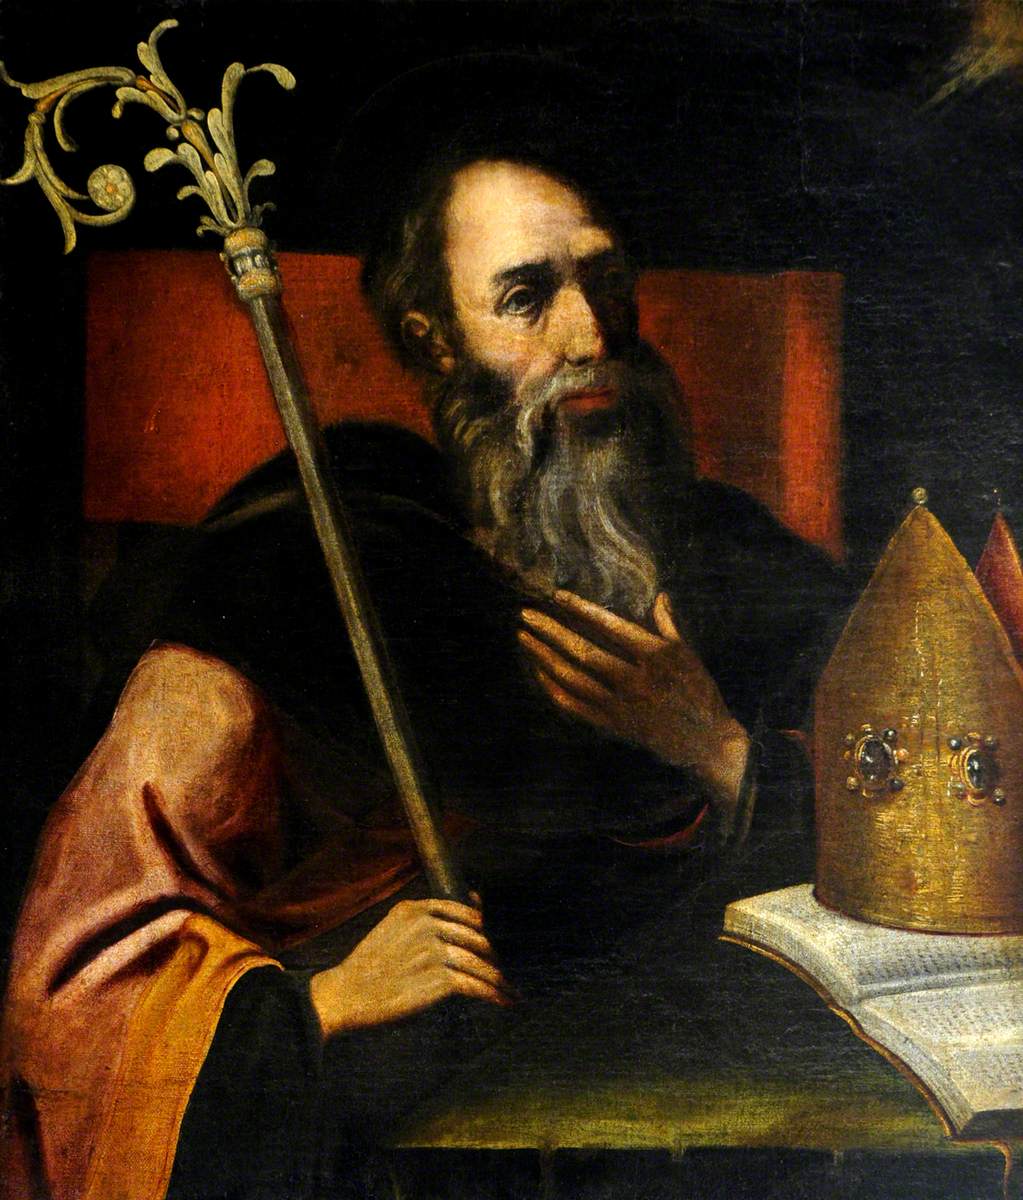 Saint Augustine